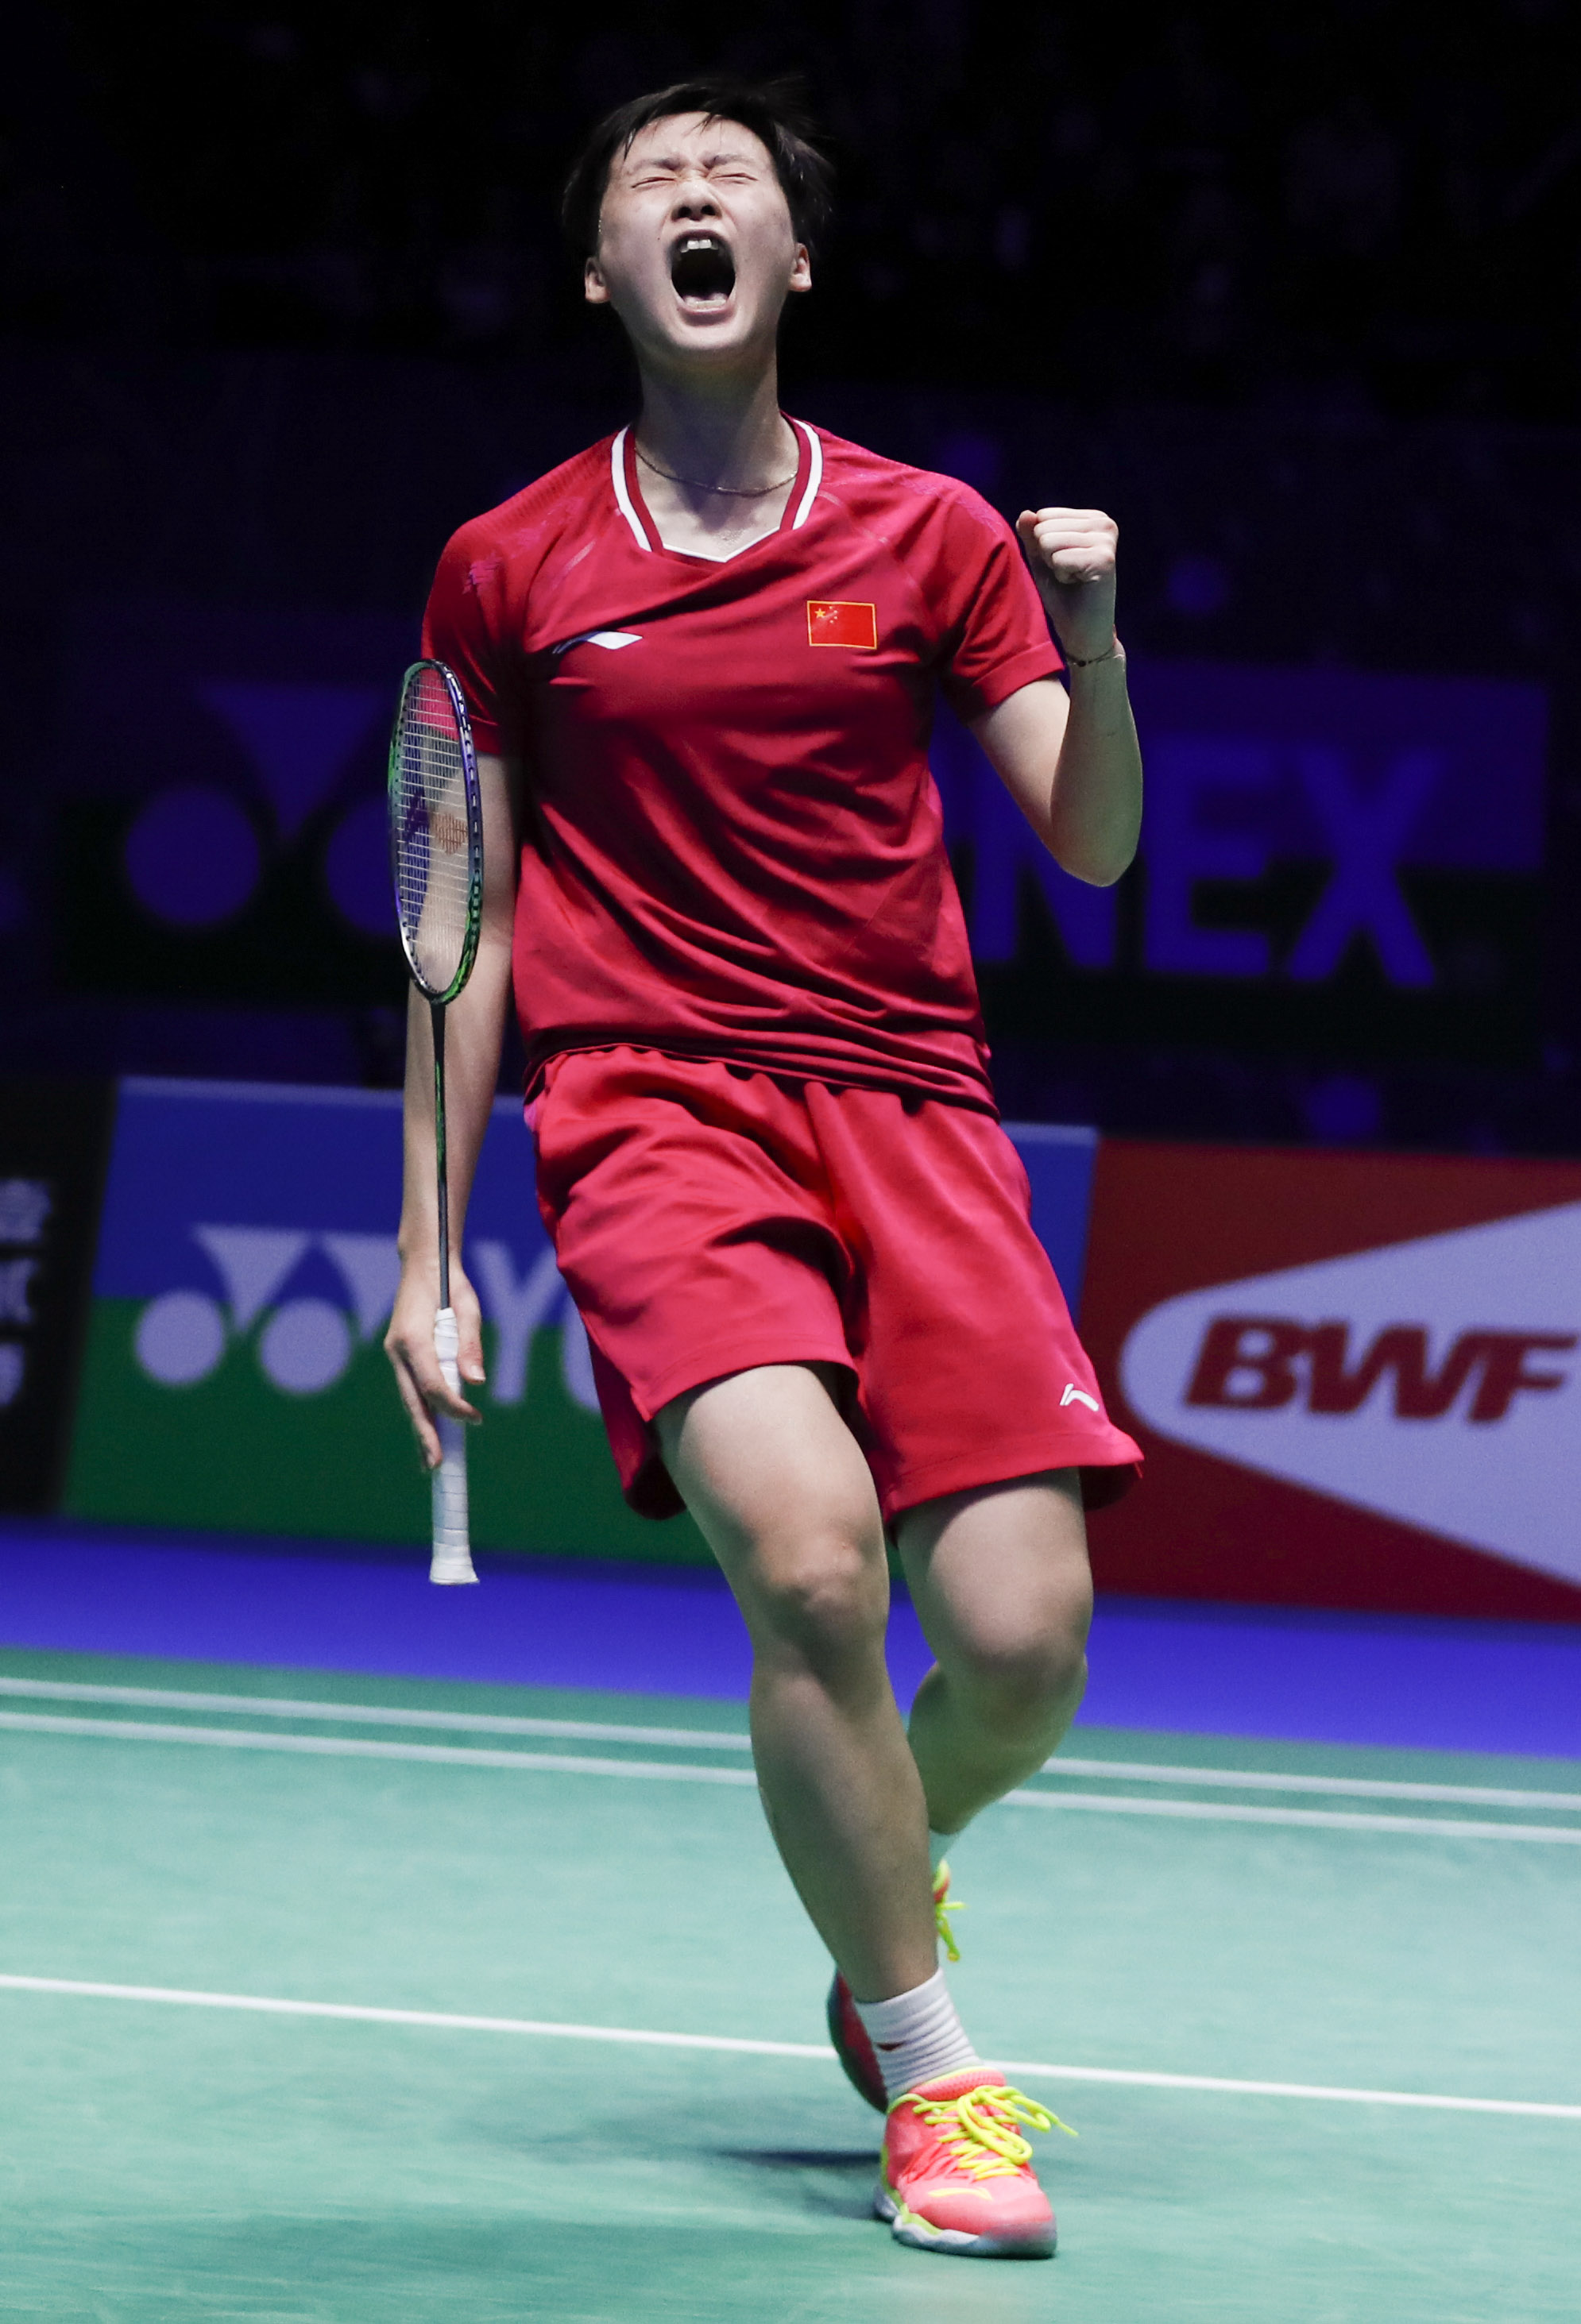 在英国伯明翰进行的2019全英羽毛球公开赛女单决赛中,中国选手陈雨菲